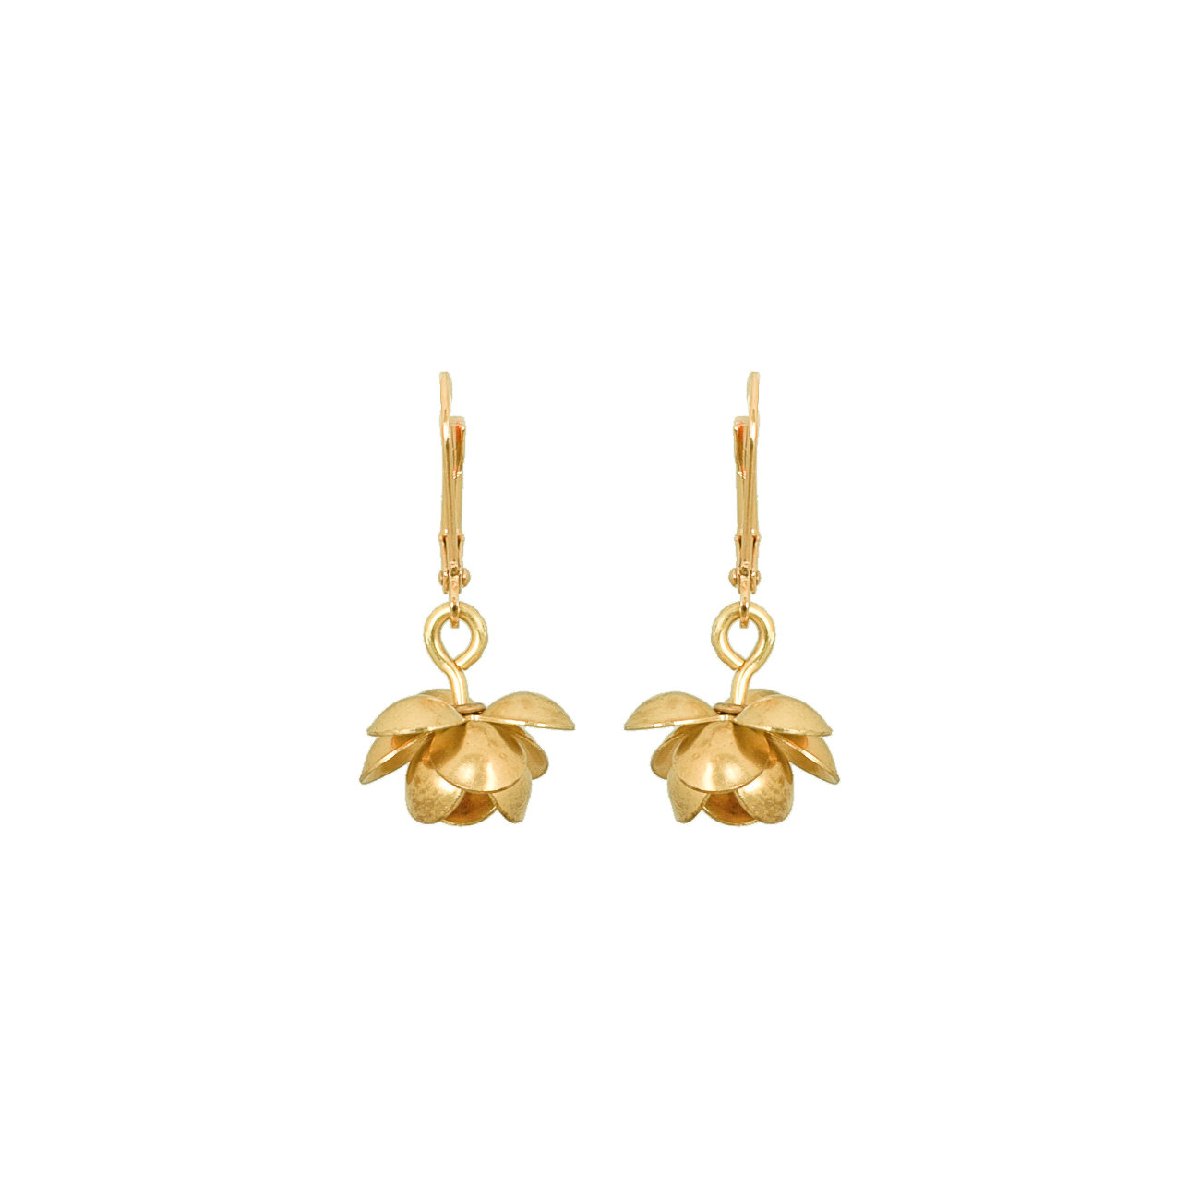 We Dream in Colour jewellery | lotus earrings